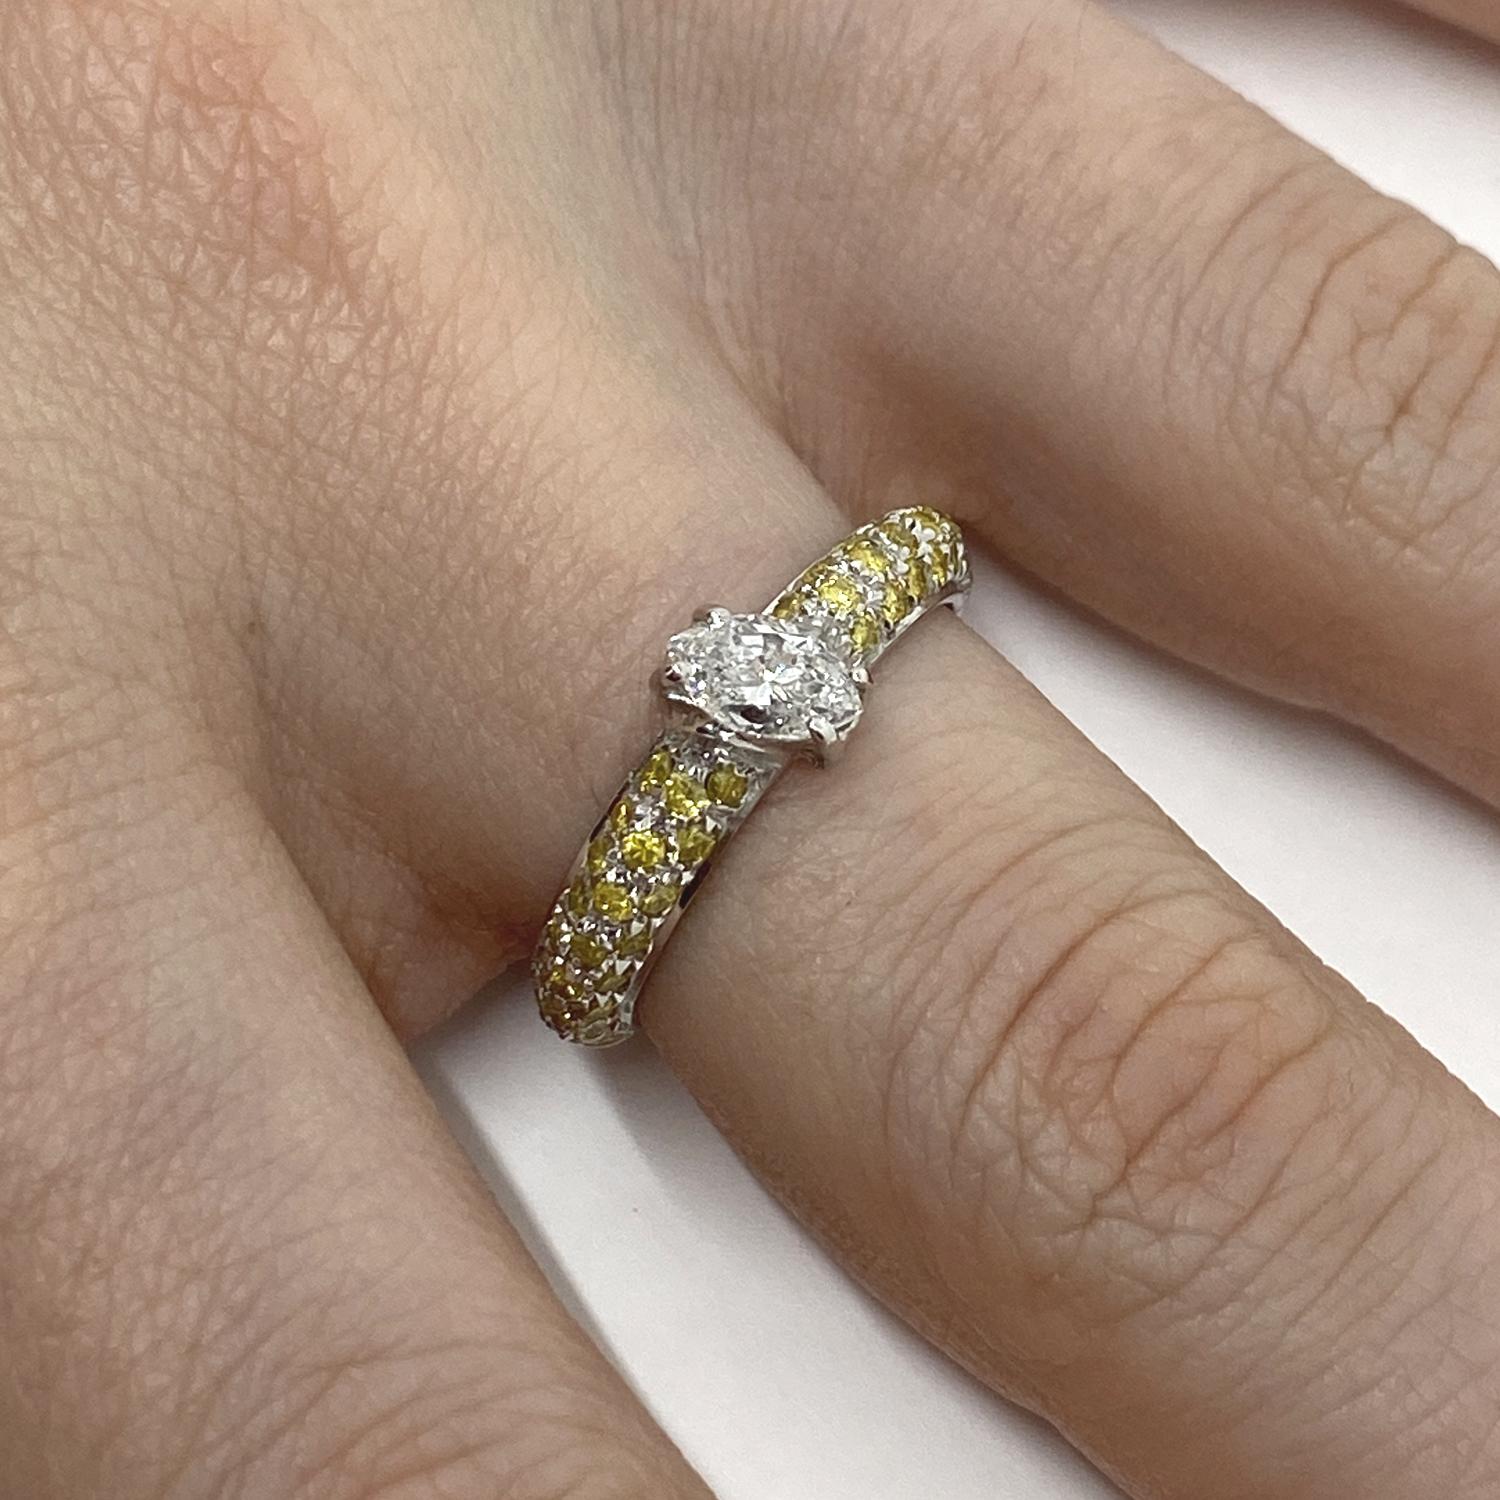 Ring aus 18-karätigem Weißgold mit natürlichem weißen Diamanten im Navetteschliff (ct.0,45) und gelben Saphiren im Brillantpavéschliff (ct.0,57)

Willkommen in unserer Schmuckkollektion, in der jedes Stück eine Geschichte von zeitloser Eleganz und